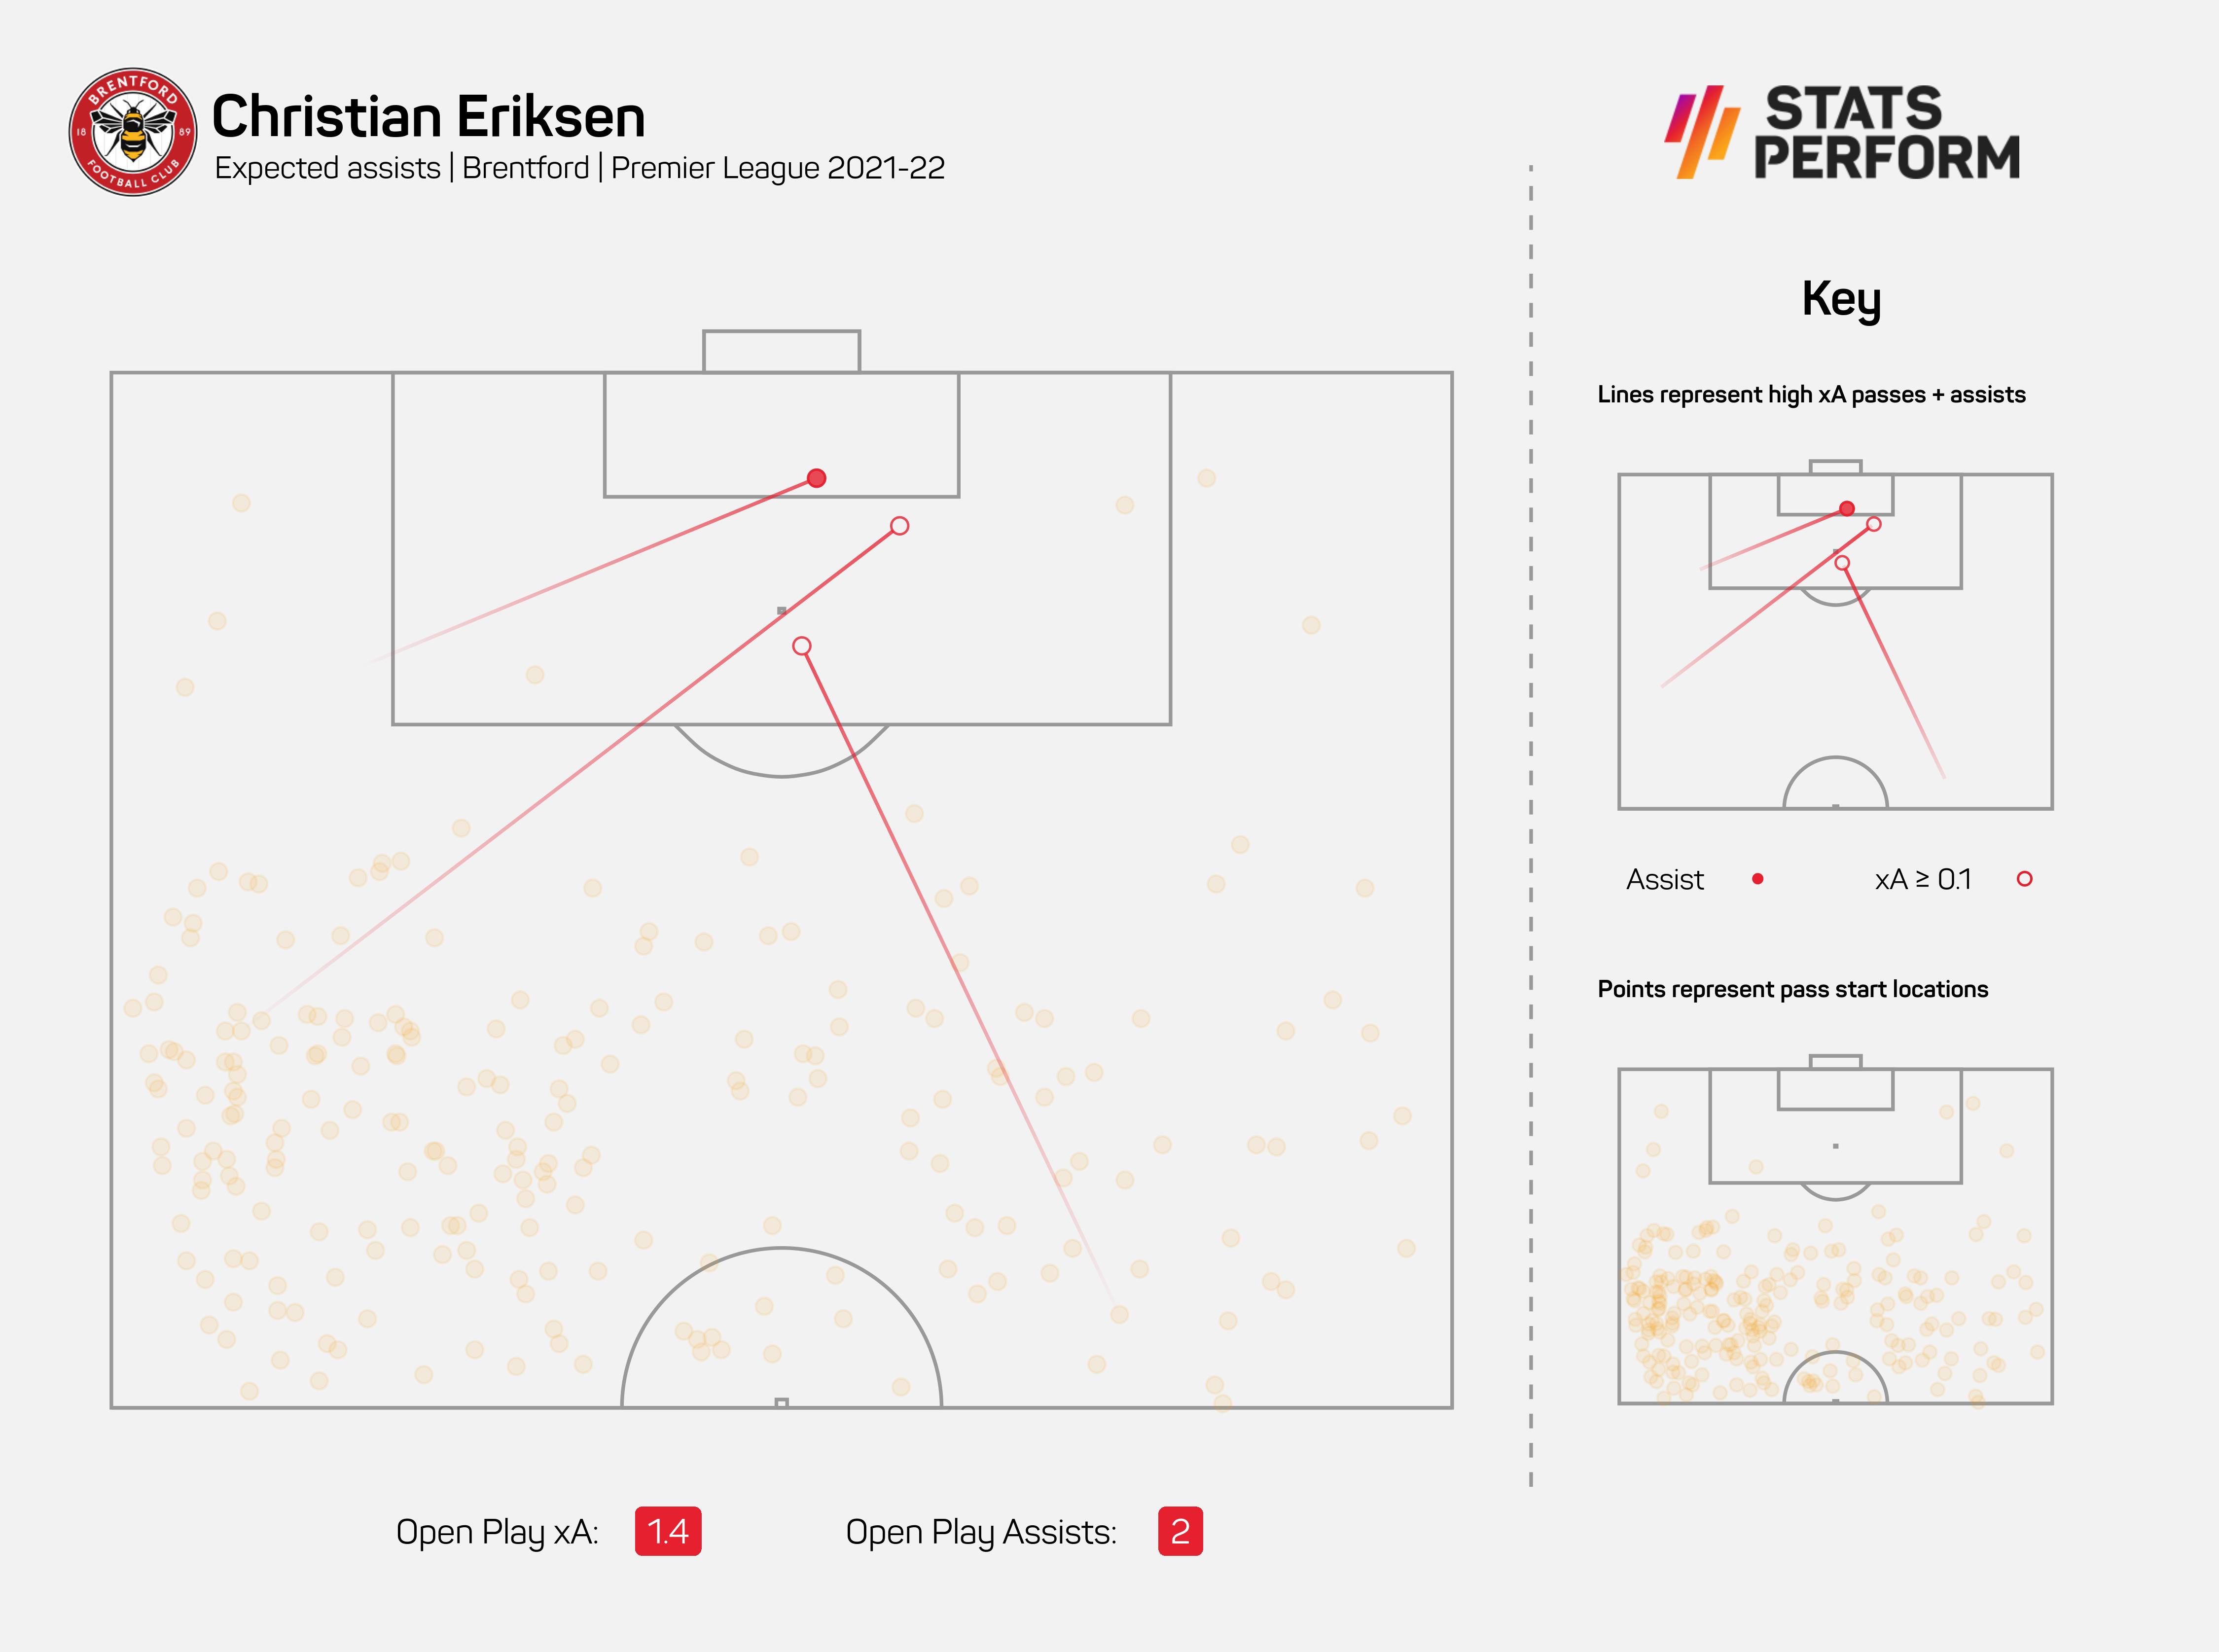 Christian Eriksen registered four Premier League assists last season